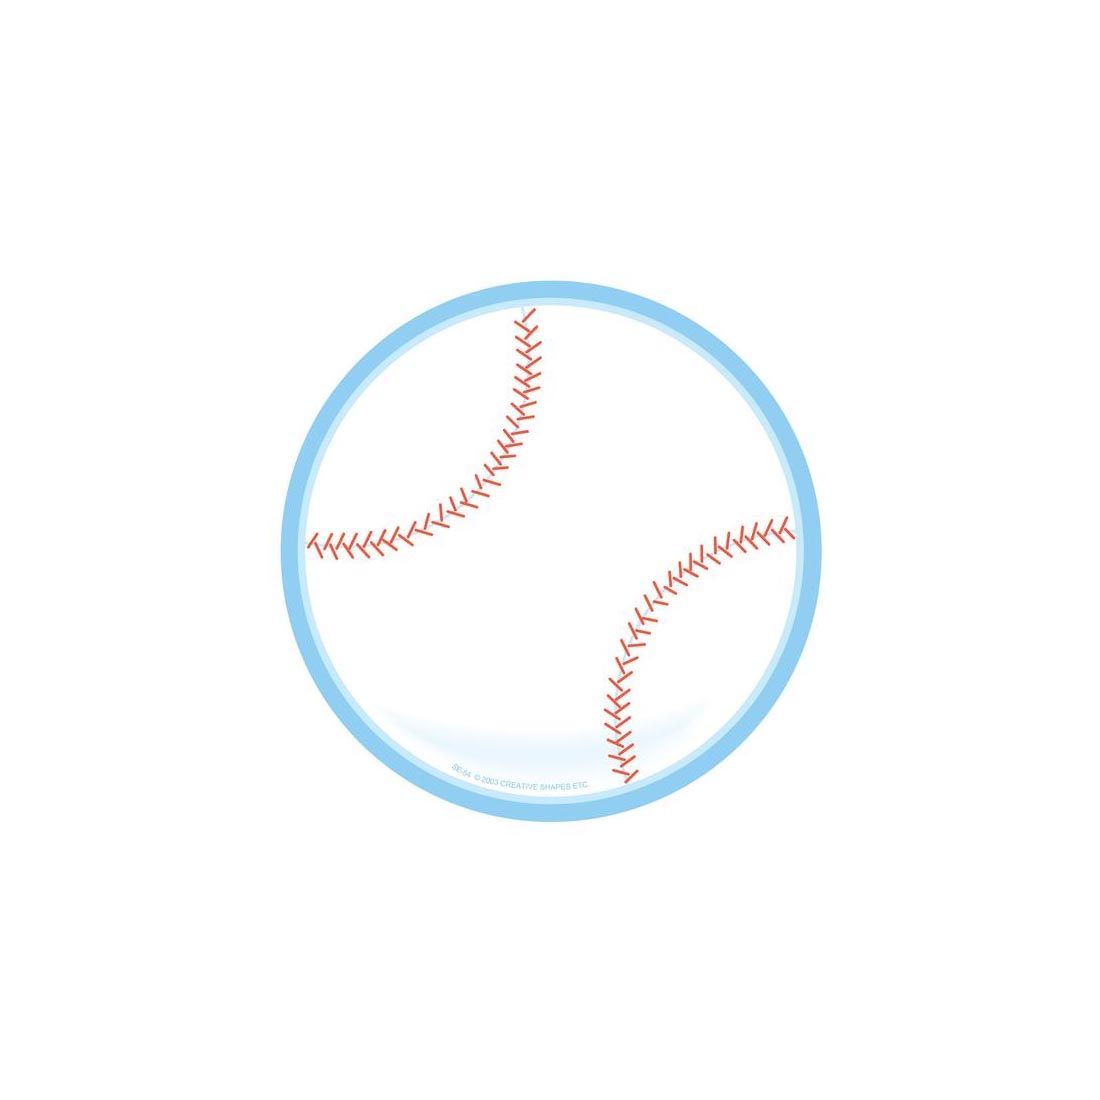 Baseball Notepad by Creative Shapes